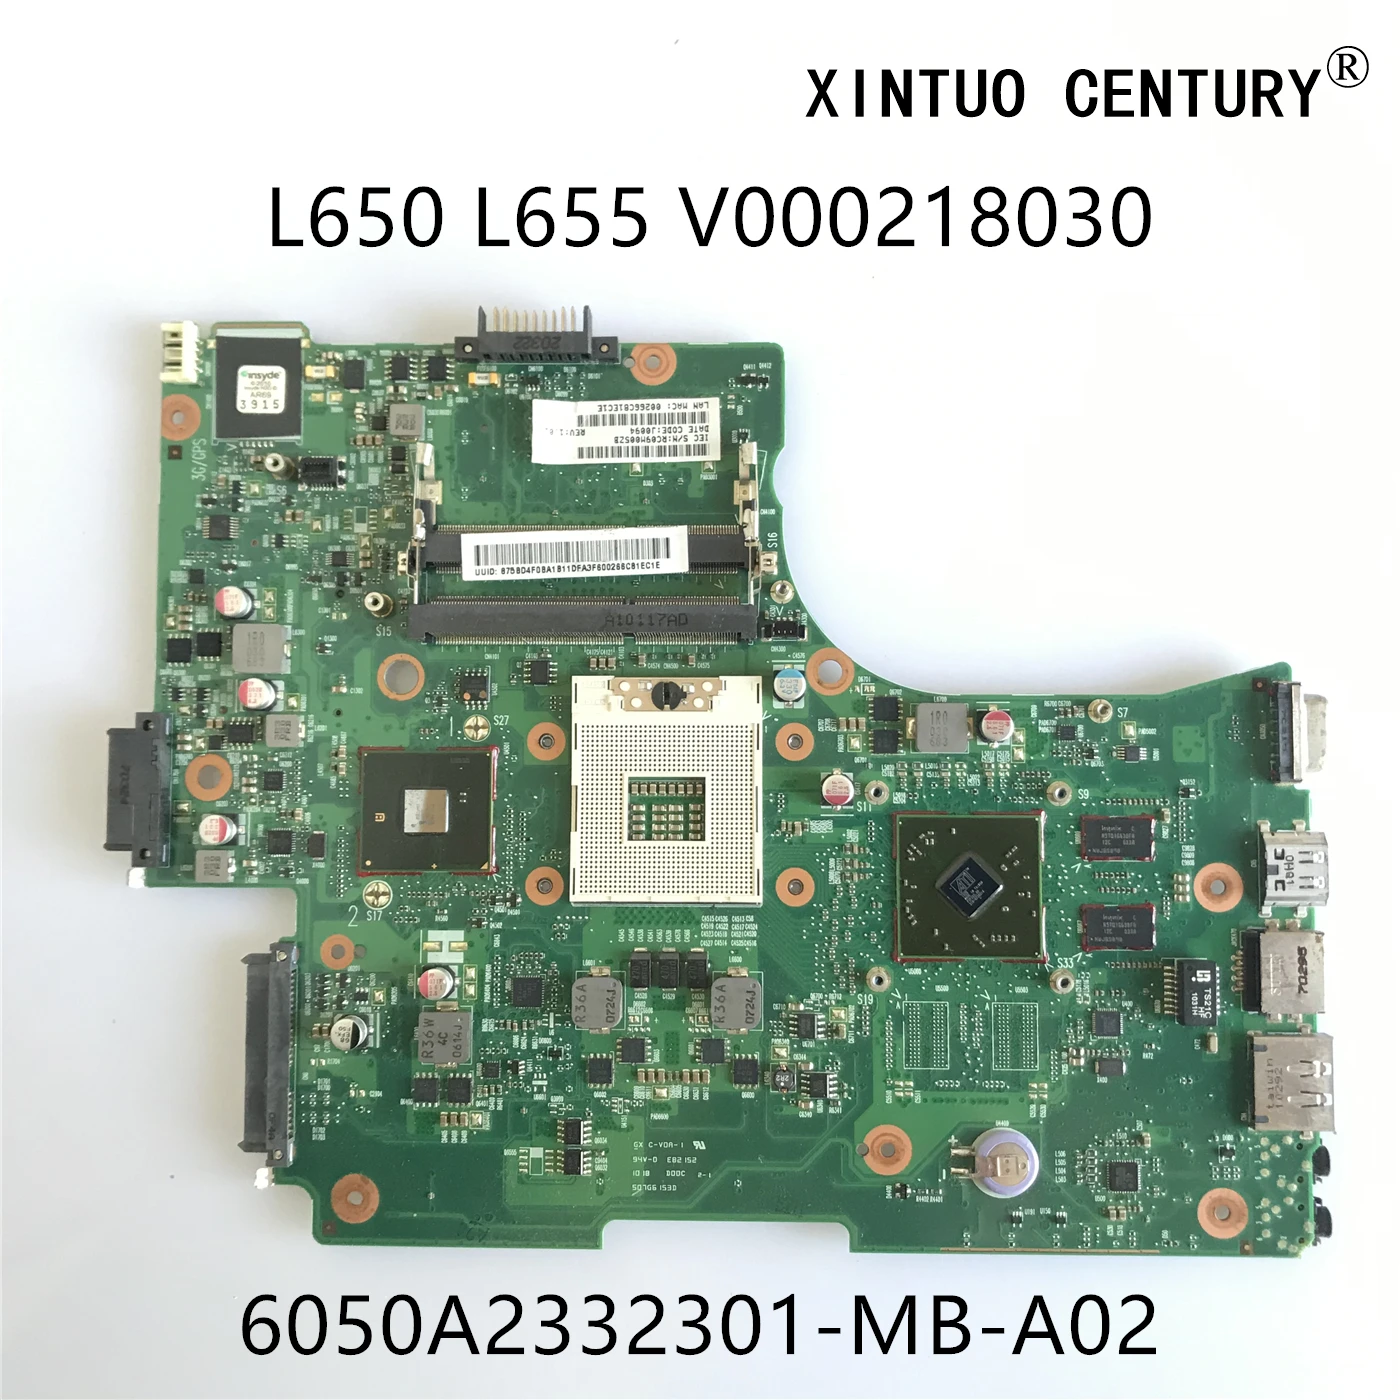 

Материнская плата V000218030 6050A2332301-MB-A02 для ноутбука Toshiba Satellite L650 L655 HM55 DDR3 W/ HD4500 GPU 100% протестированная